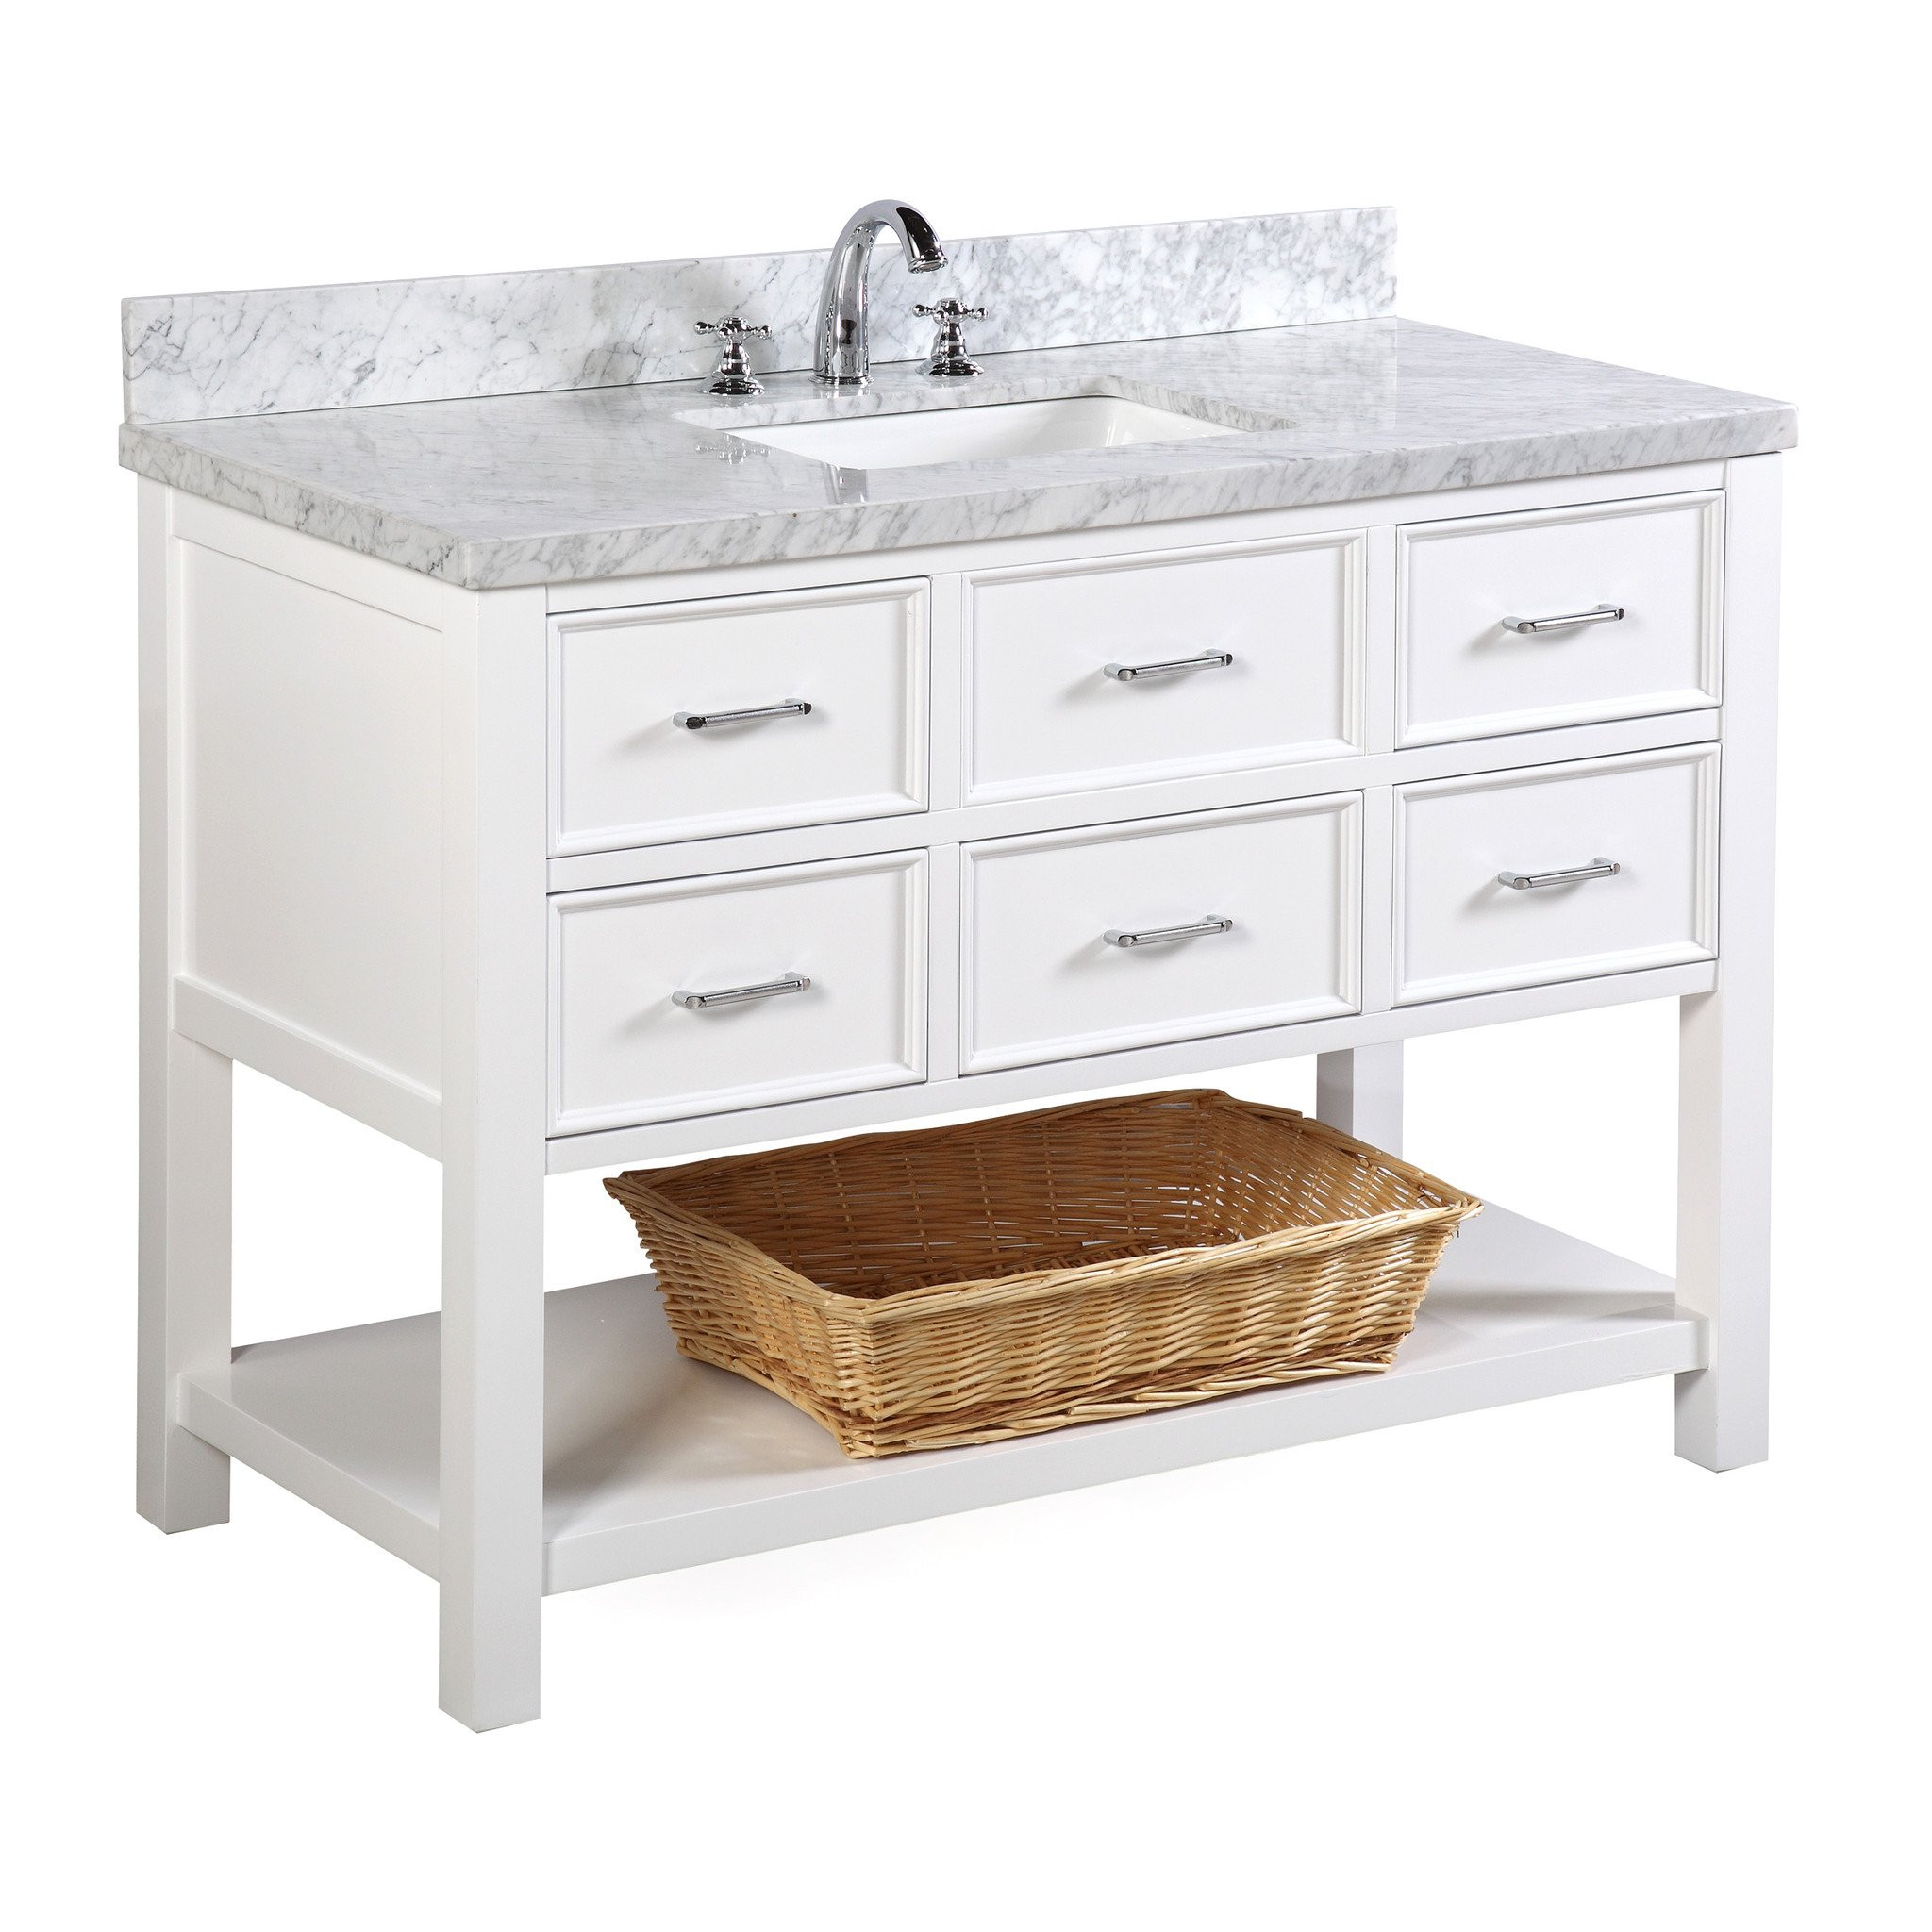 White 48 Inch Bathroom Vanities
 New Hampshire 48 inch Vanity Carrara White